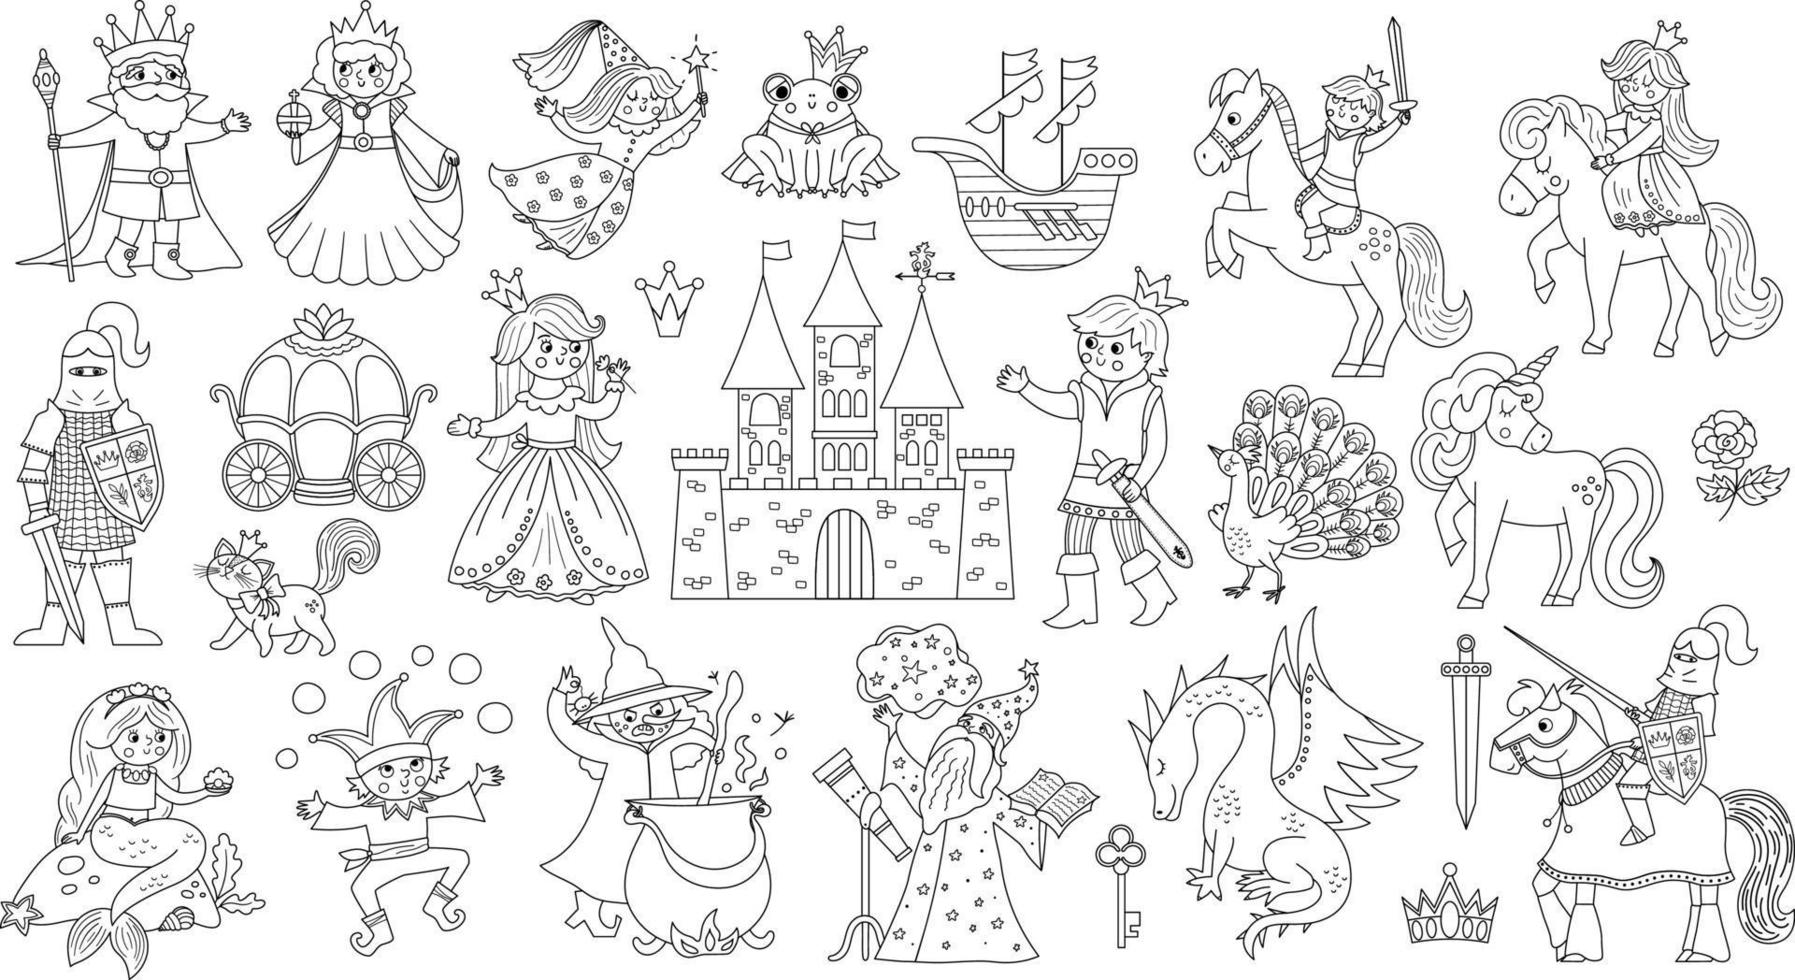 sprookje zwart-wit tekens en objecten collectie. grote vector set met lijn fantasie prinses, koning, koningin, heks, ridder, eenhoorn, draak. middeleeuws sprookjeskasteelpakket of kleurplaat